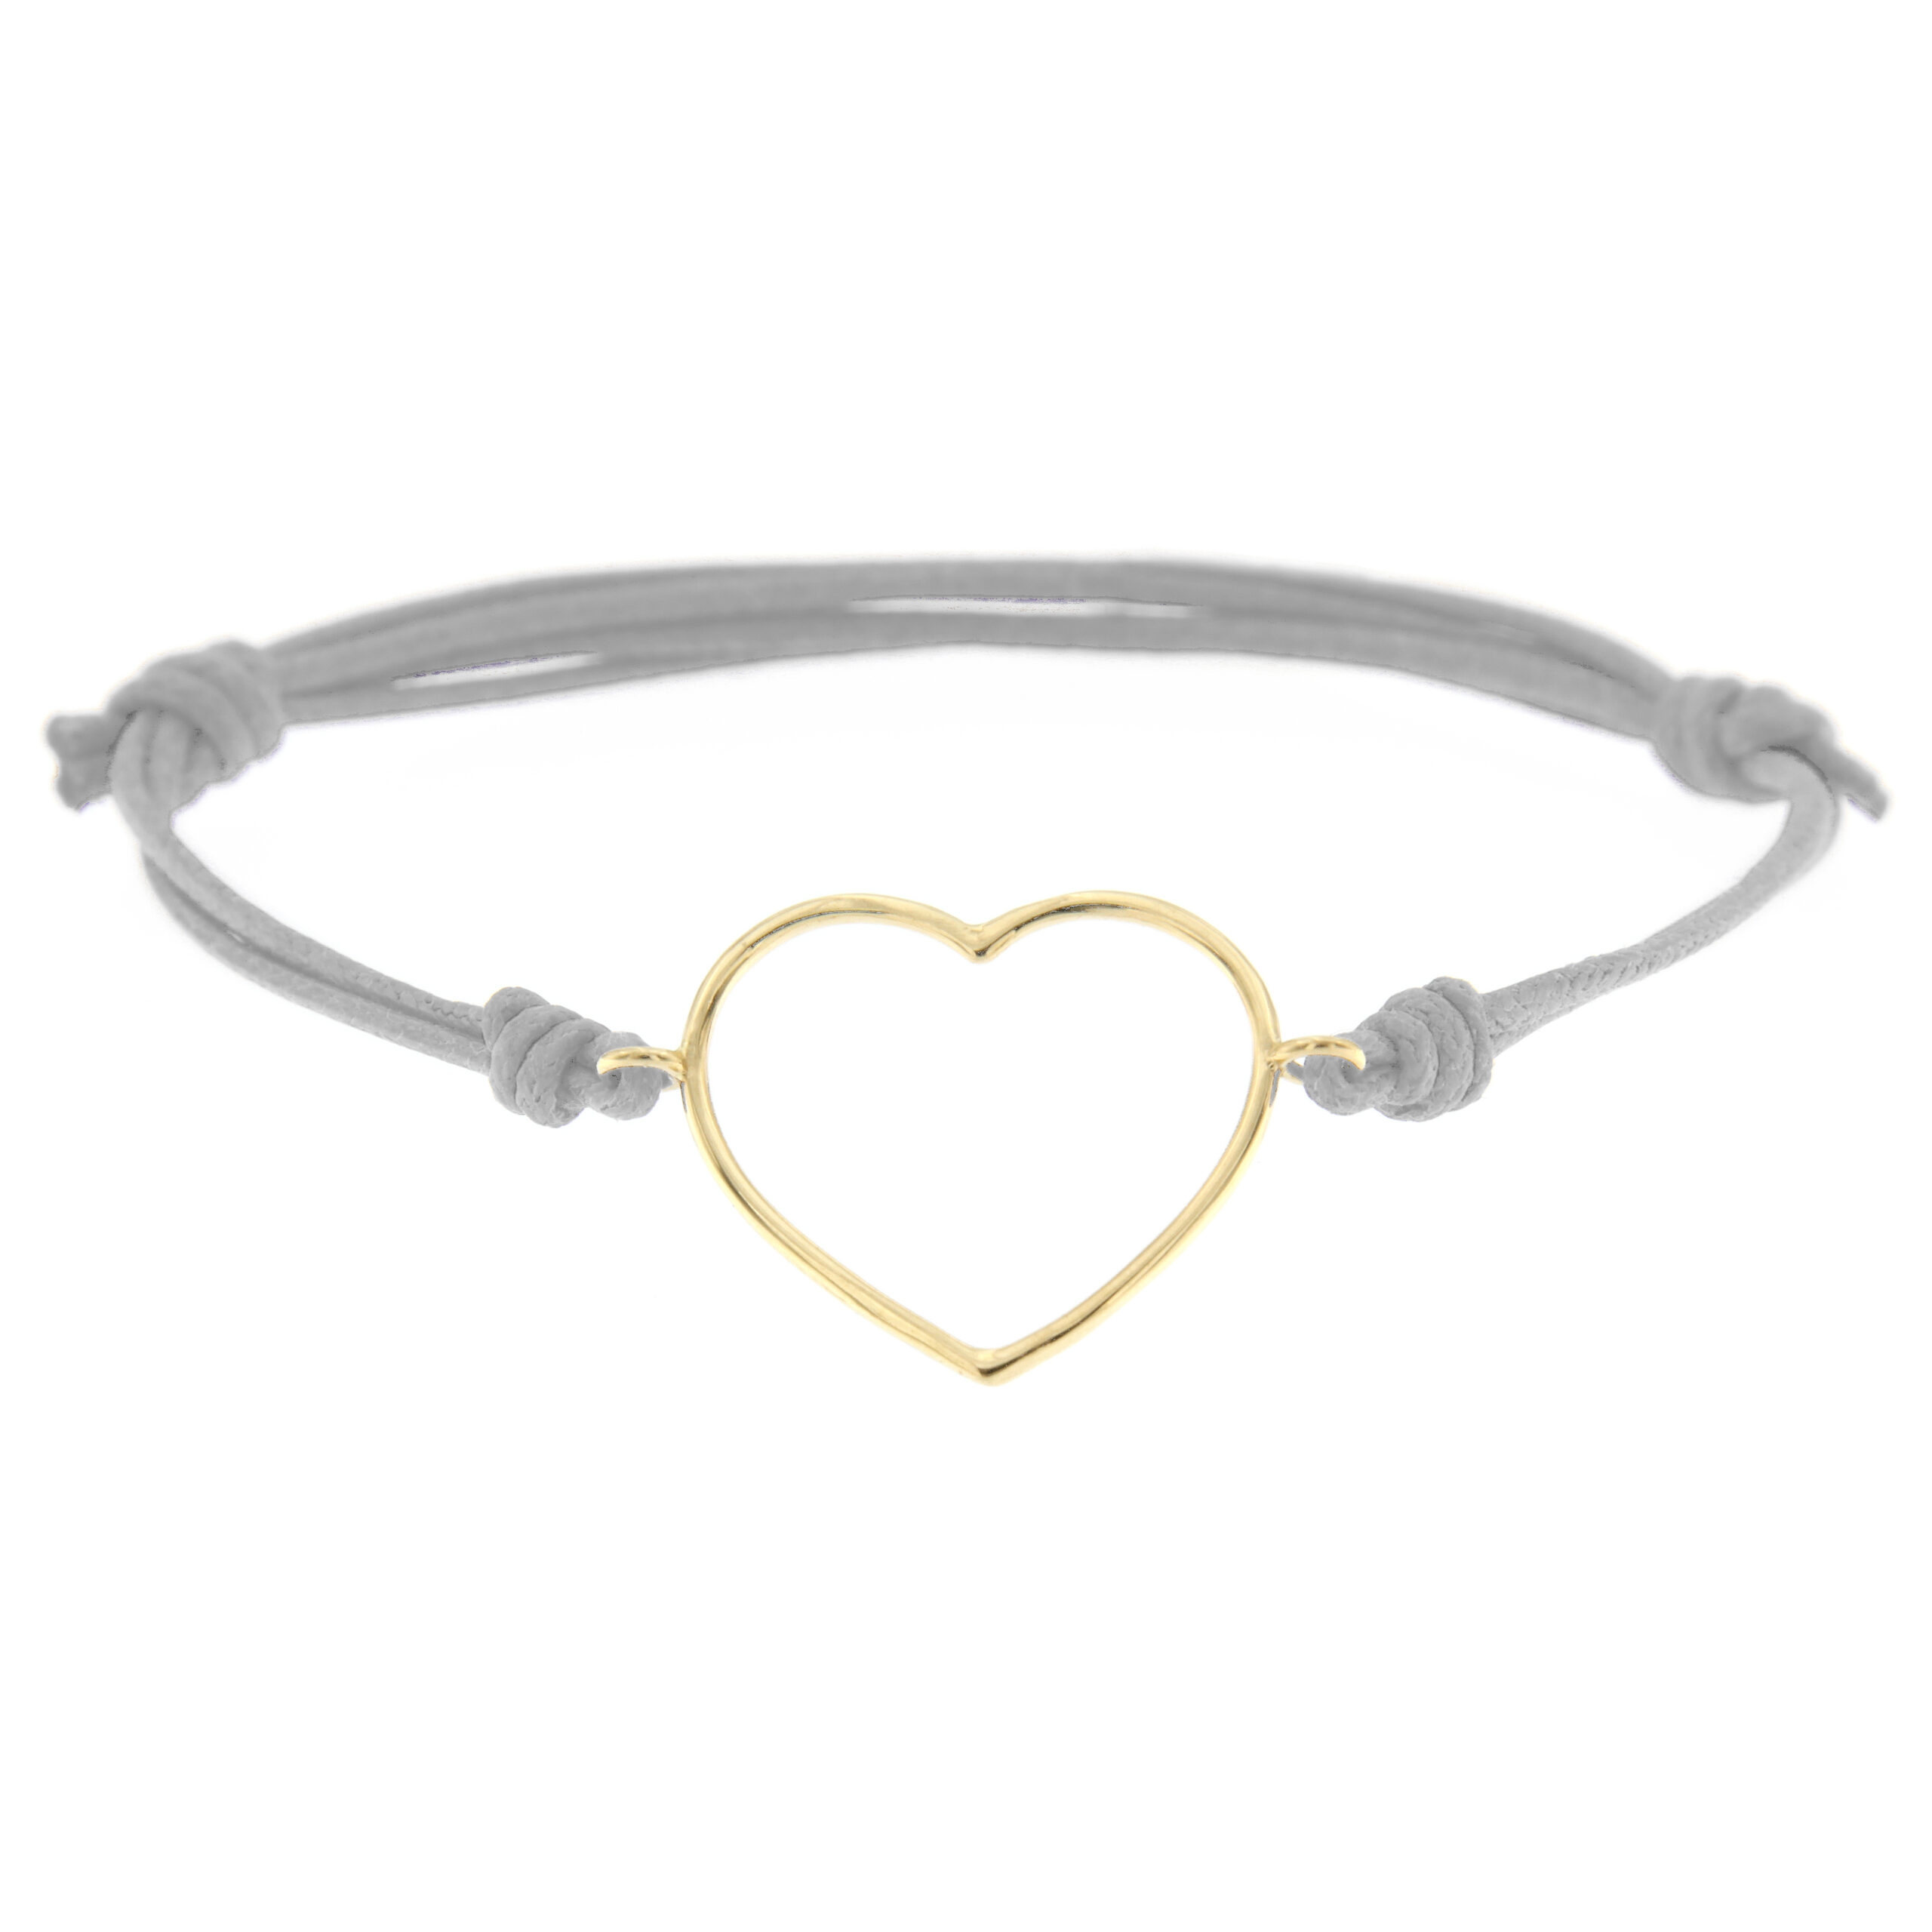 BRACELET - Angèle mini onyx heart bracelet | Ginette NY